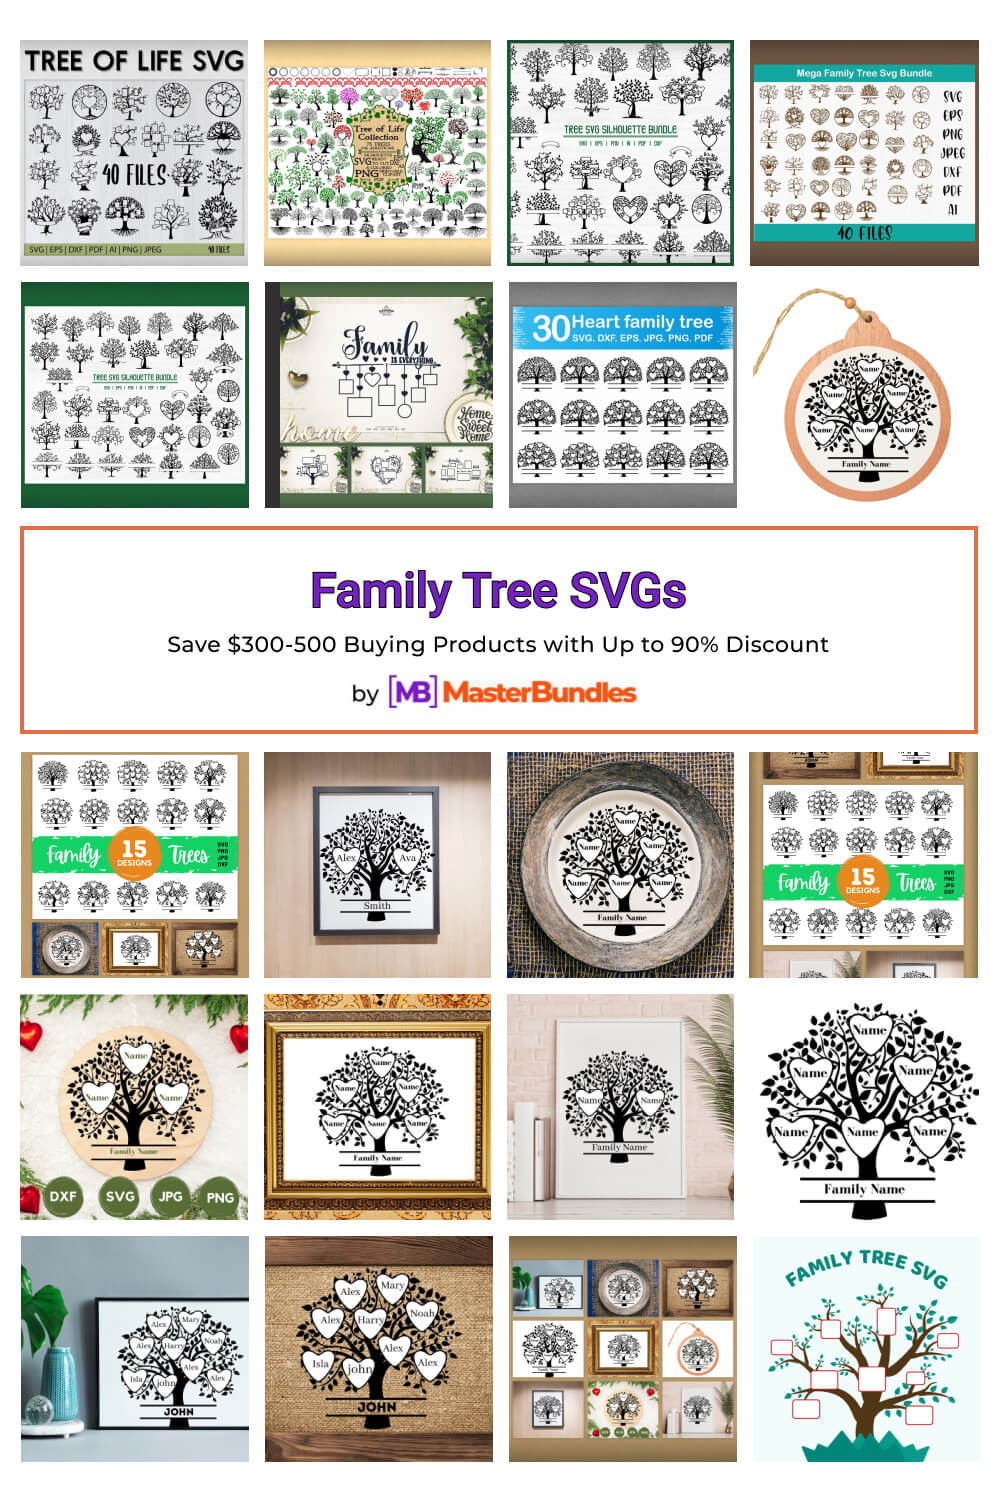 family tree svgs pinterest image.